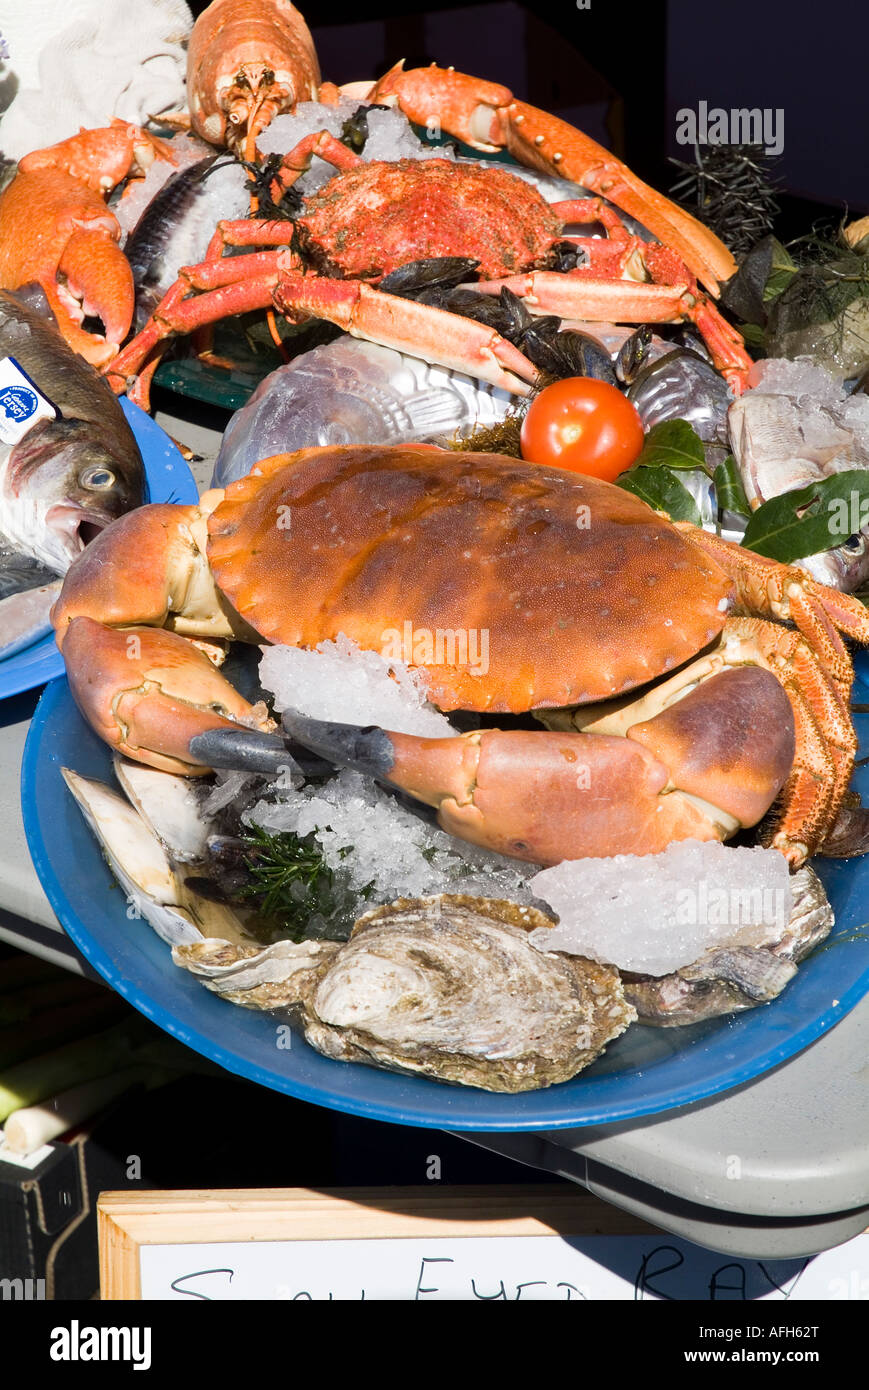 dh cancer pagurus FRUITS DE MER JERSEY européen comestible grand crabe sur plaque Jersey produire canal îles poissons décrochage nourriture crabes brun marché local royaume-uni Banque D'Images